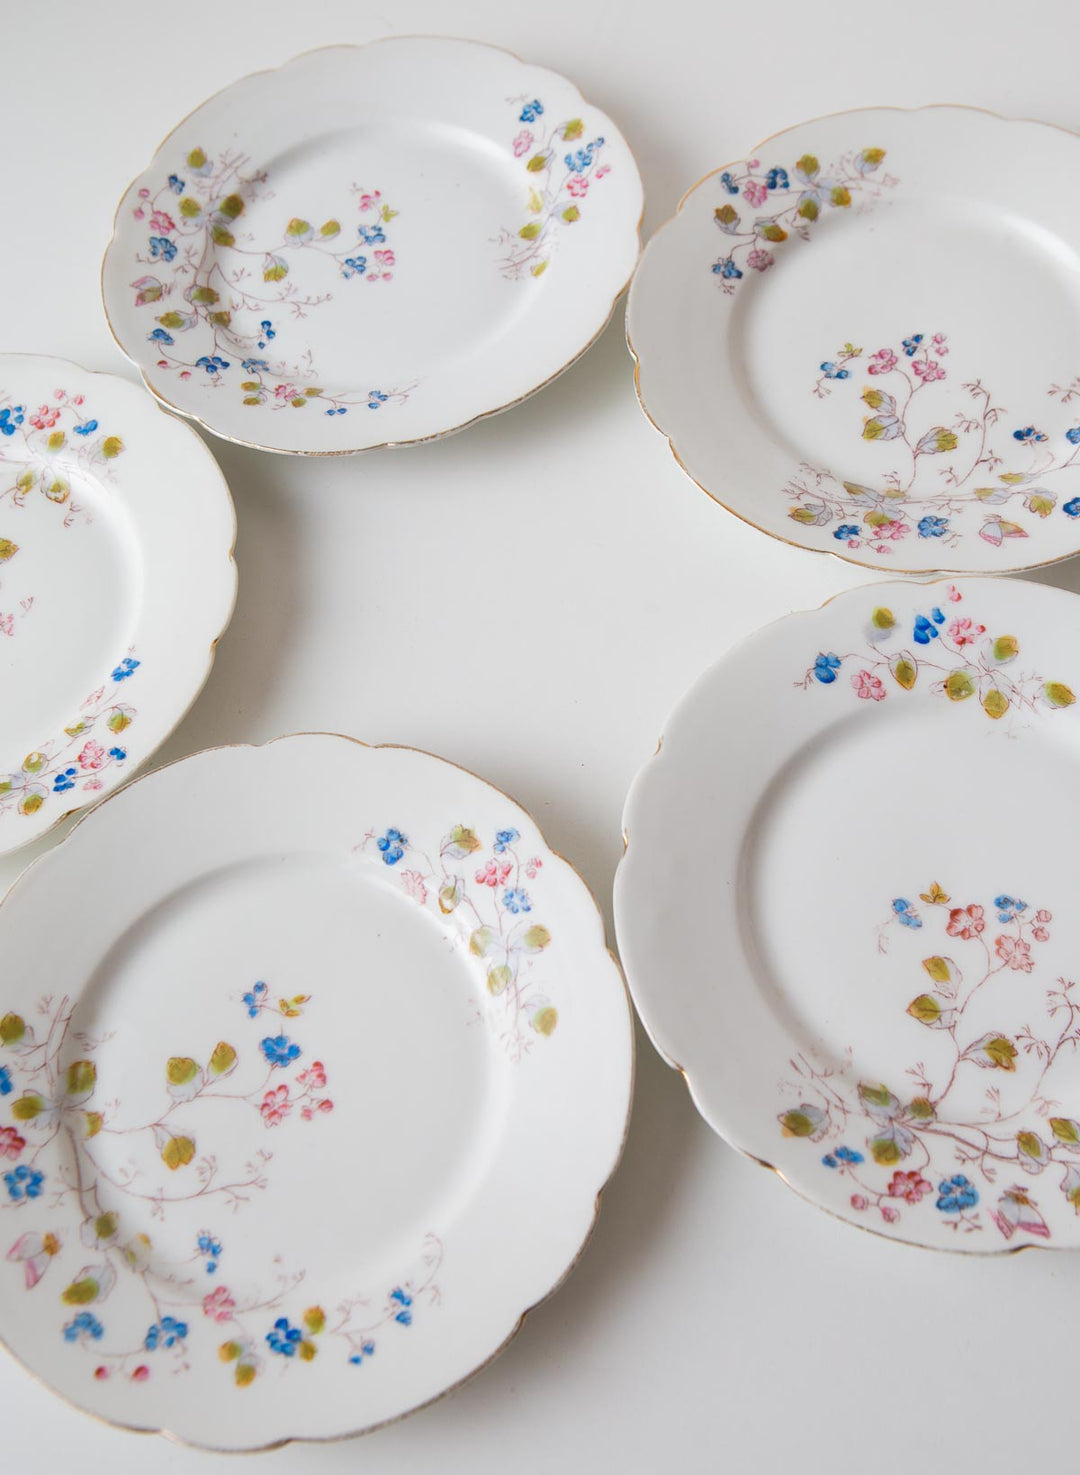 Platos porcelana 20 cm Vieux Paris c. 1900 hand painted french porcelain plates